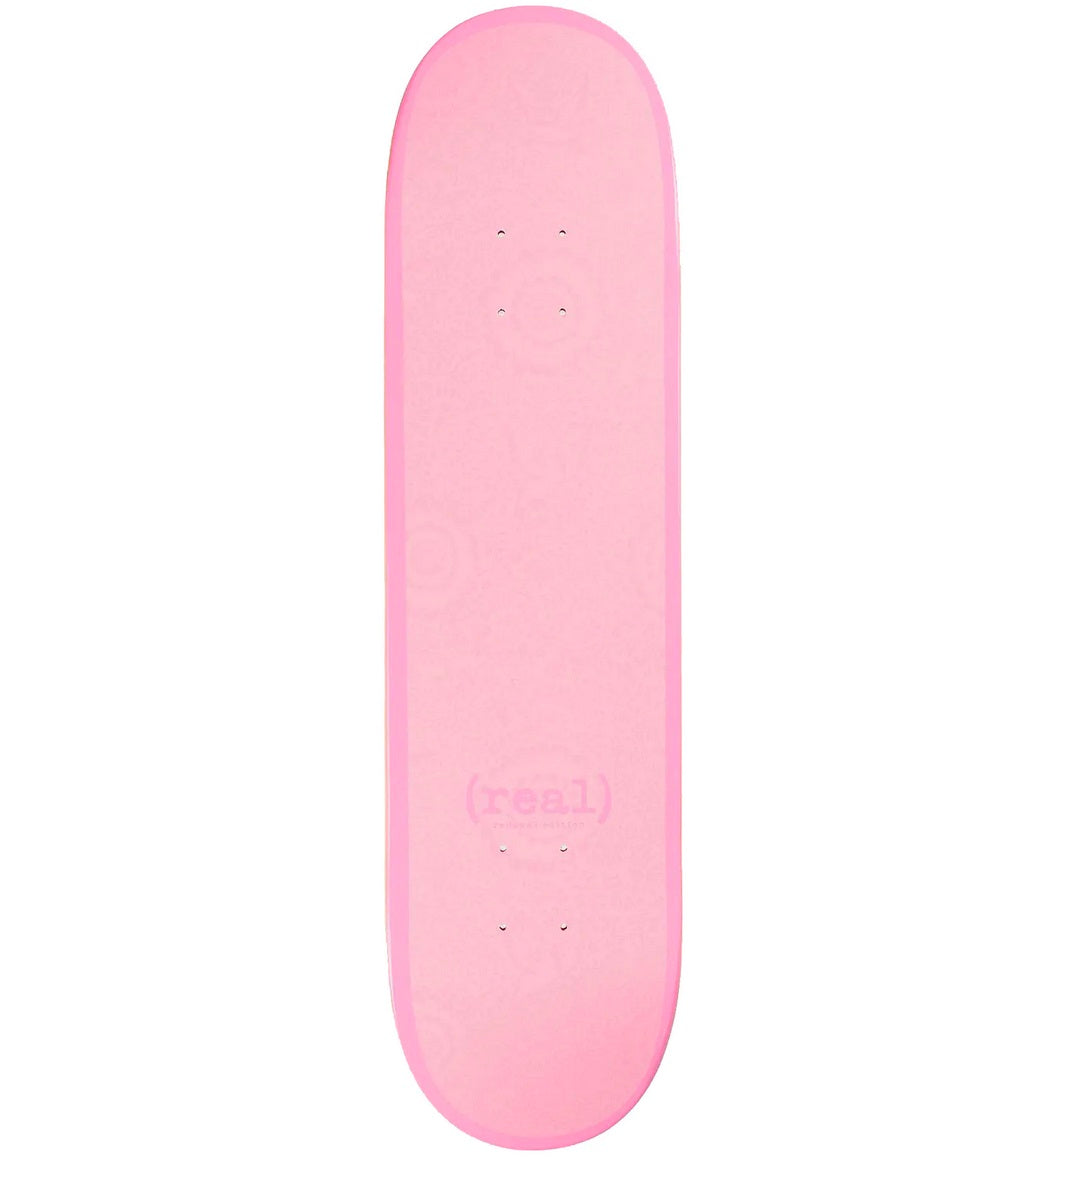 Real Flowers Renewal Pink PP Skateboard Deck - 8.06"